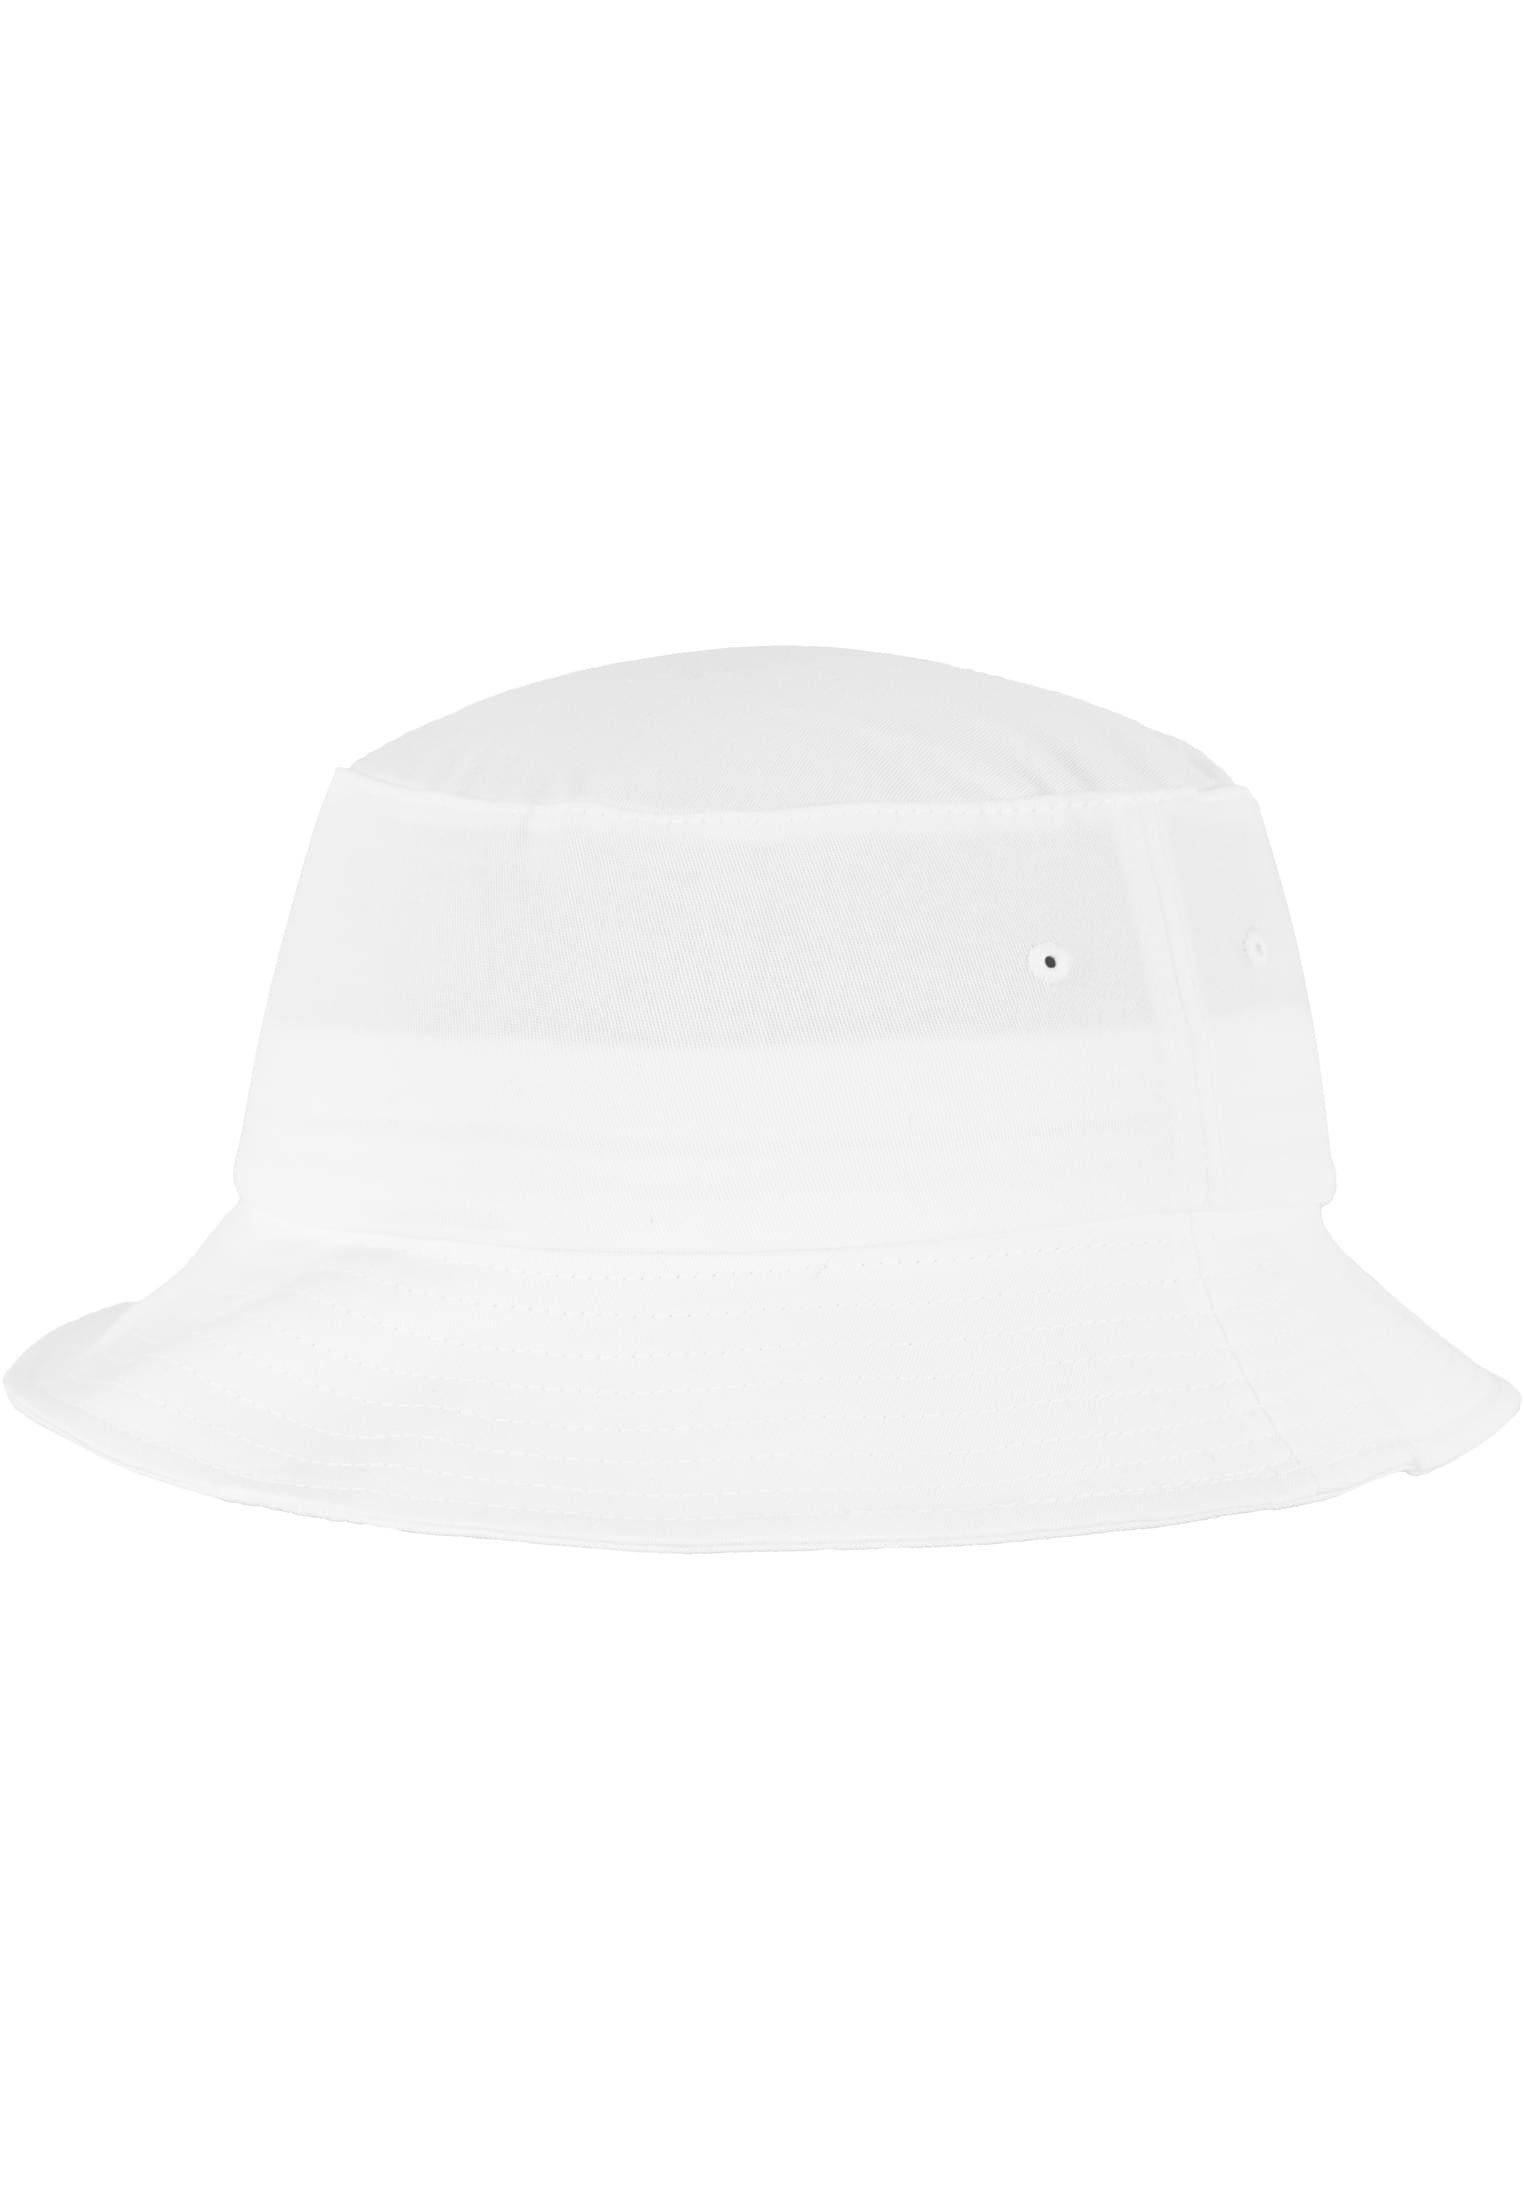 Flexfit Accessoires Bucket Hat white Twill Flexfit Cotton Flex Cap